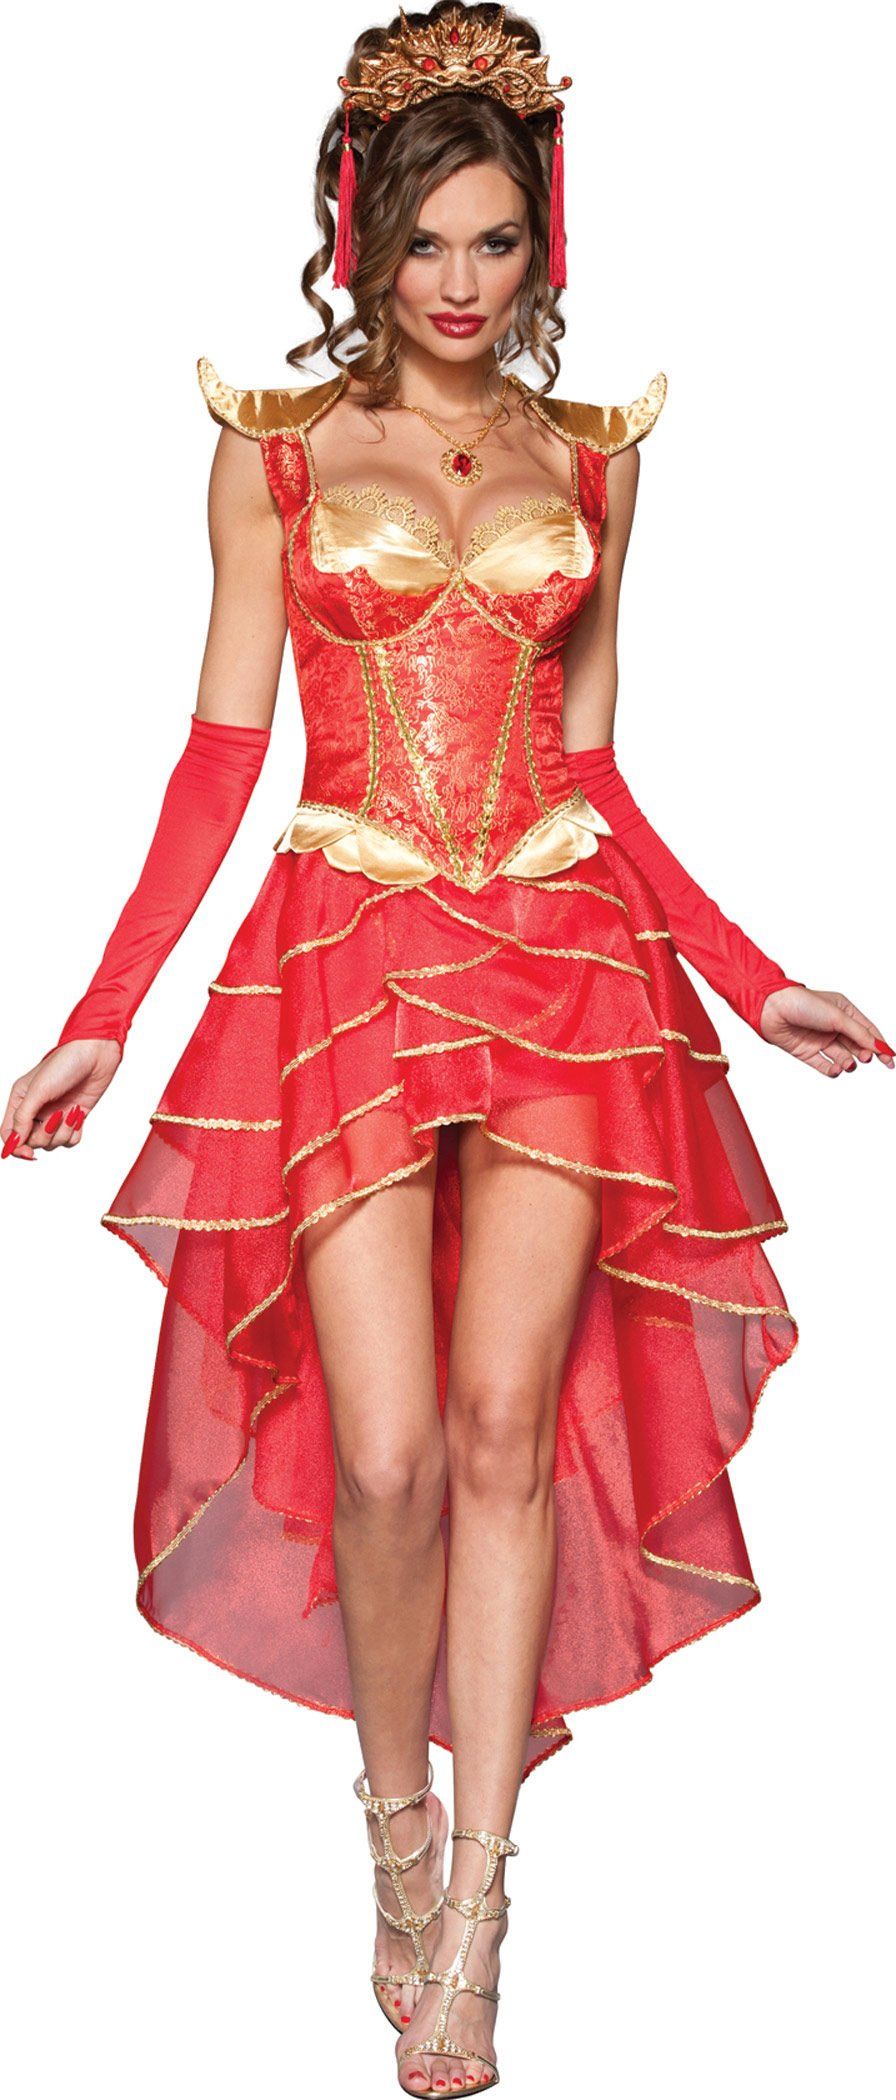 Milan reccomend Adult asian princess costume